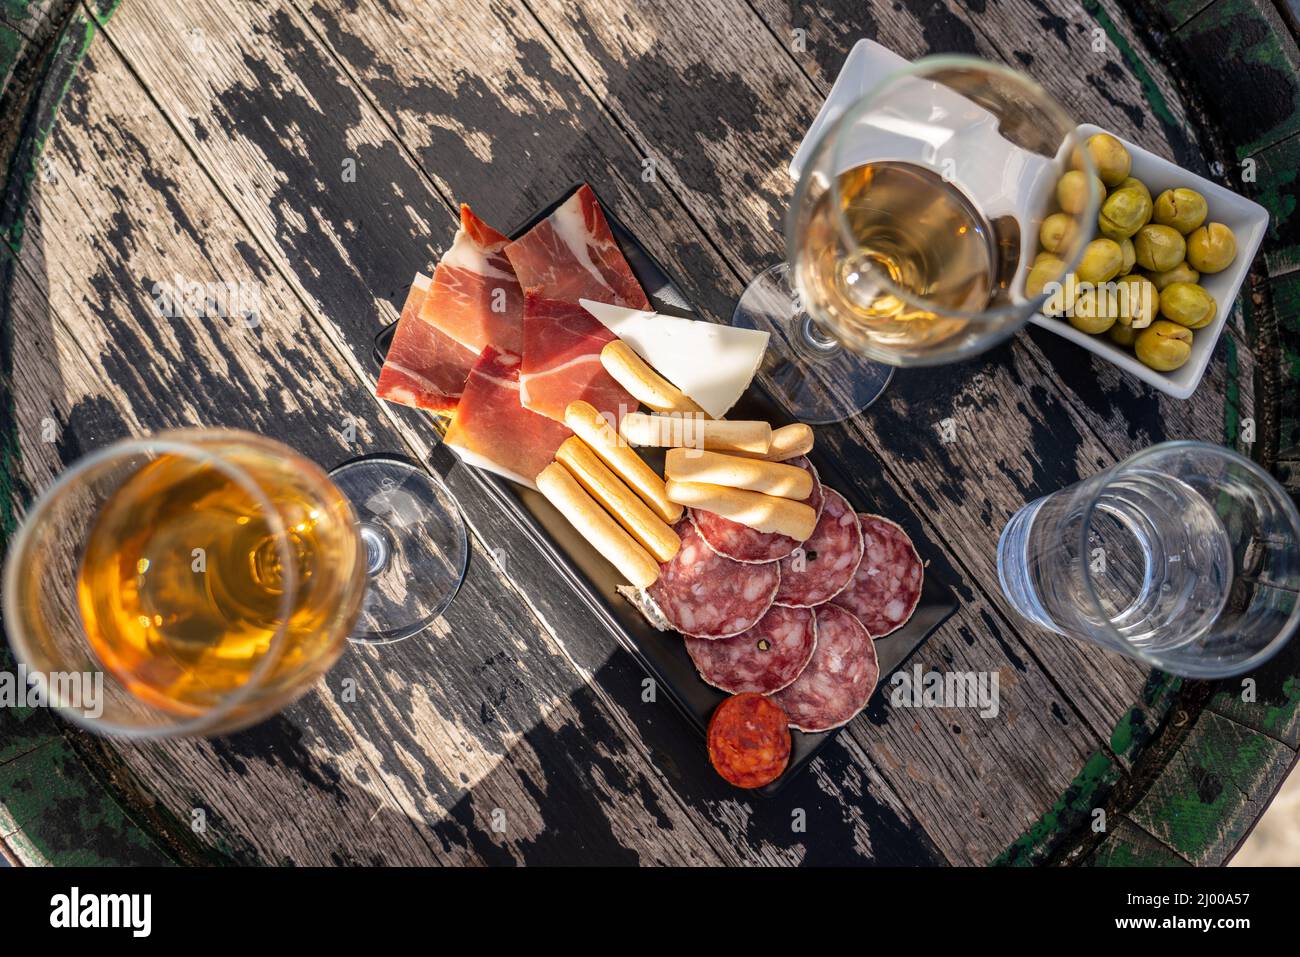 Spanische Tapas auf einem Holzfaßtisch mit zwei Gläsern Wein und einem Wasserglas. Oliven, Jamon, Chorizo, Käse. Stockfoto